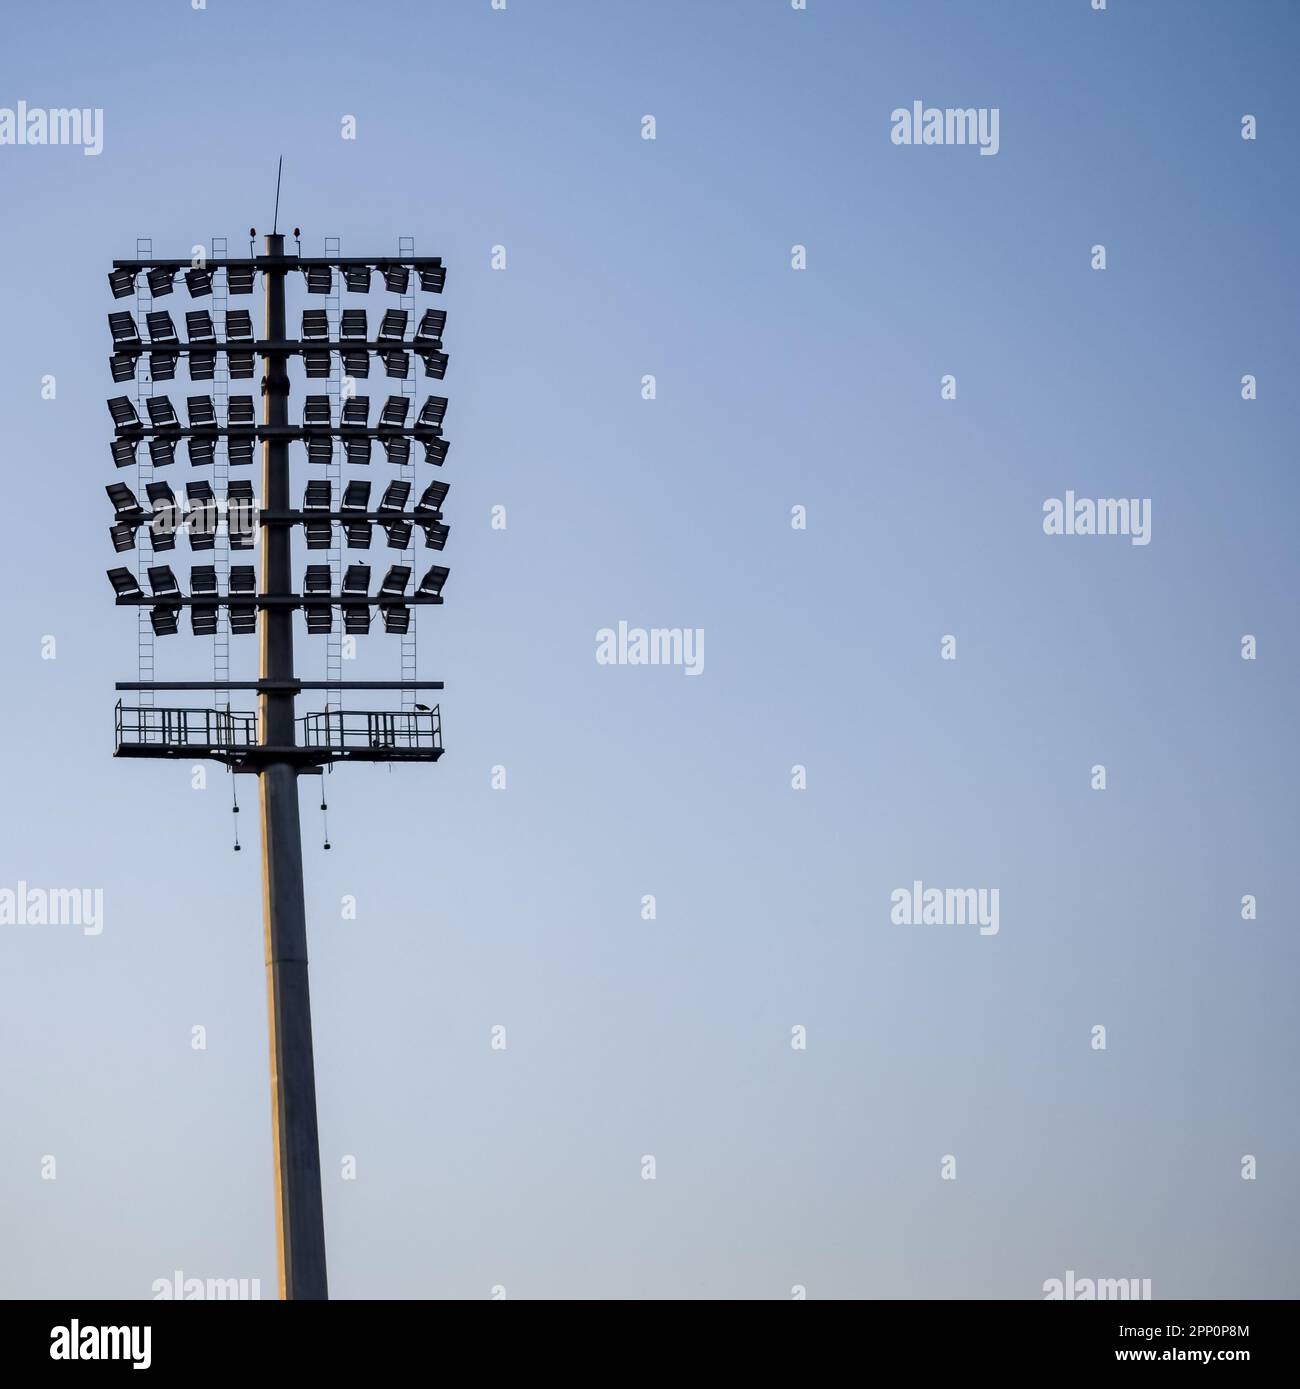 El estadio de críquet ilumina los postes en Delhi, India, Cricket Stadium Lights. Foto de stock